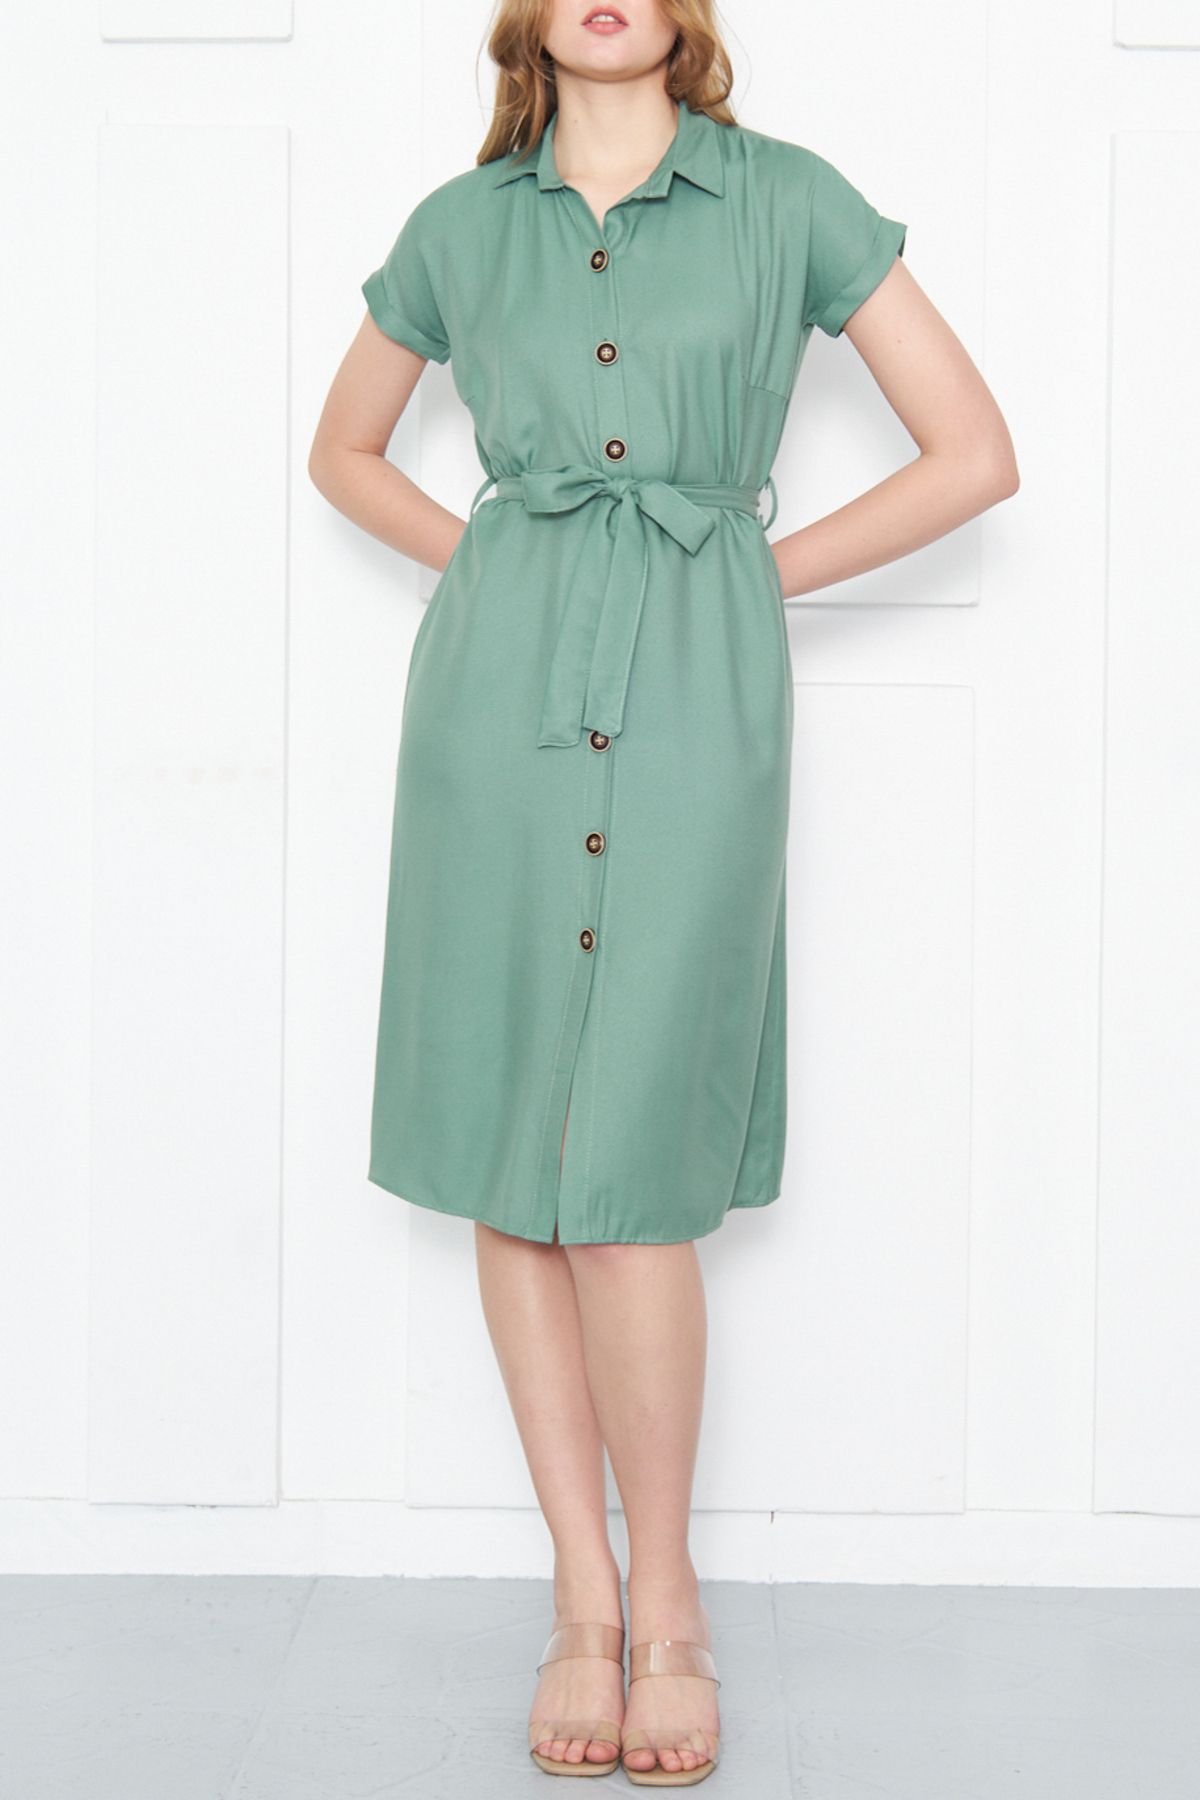 armonika Kadın Yeşil Beli Kemerli Kısa Kol Gömlek Elbise ARM-19Y001068